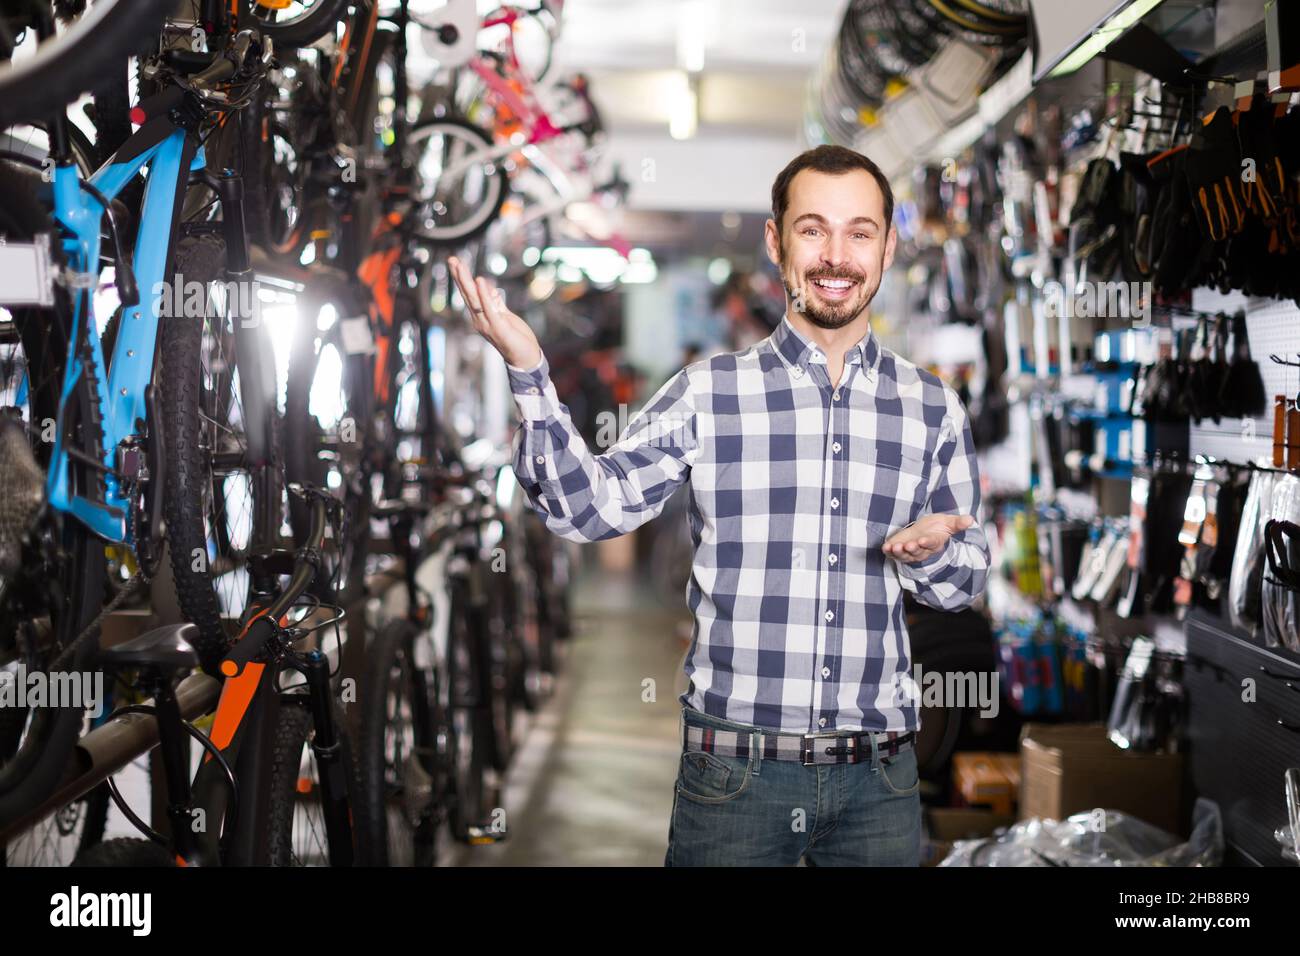 Der Mensch zeigt seine Hand und sieht sich verschiedene Fahrradteile an Stockfoto